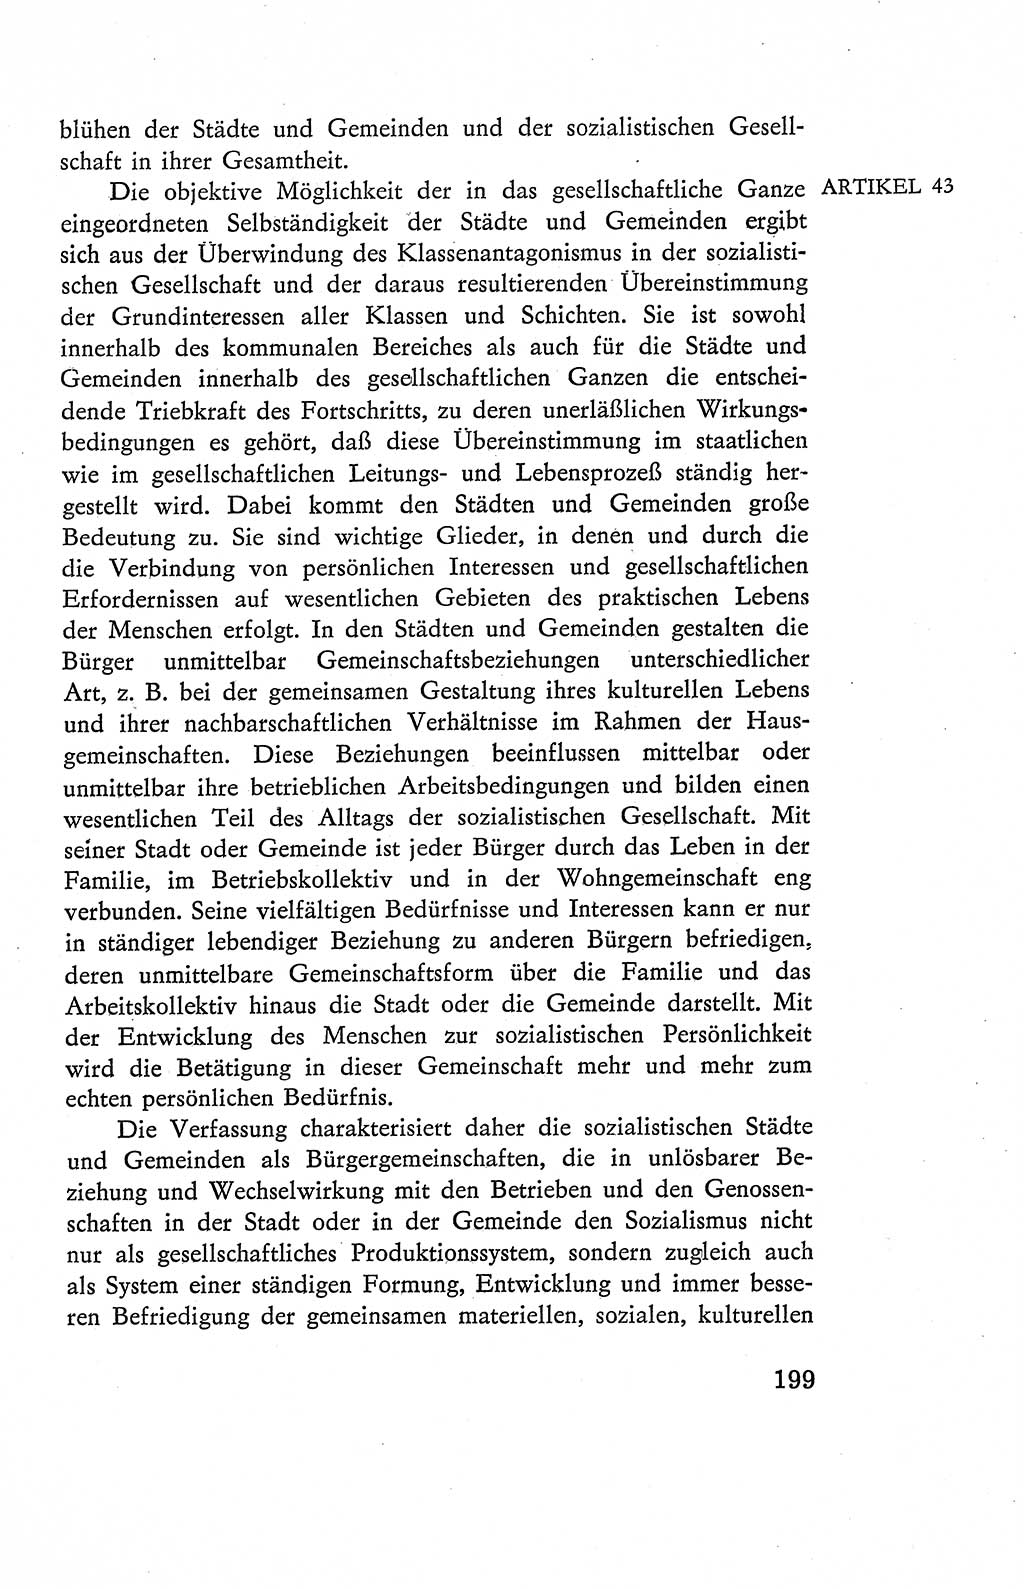 Verfassung der Deutschen Demokratischen Republik (DDR), Dokumente, Kommentar 1969, Band 2, Seite 199 (Verf. DDR Dok. Komm. 1969, Bd. 2, S. 199)